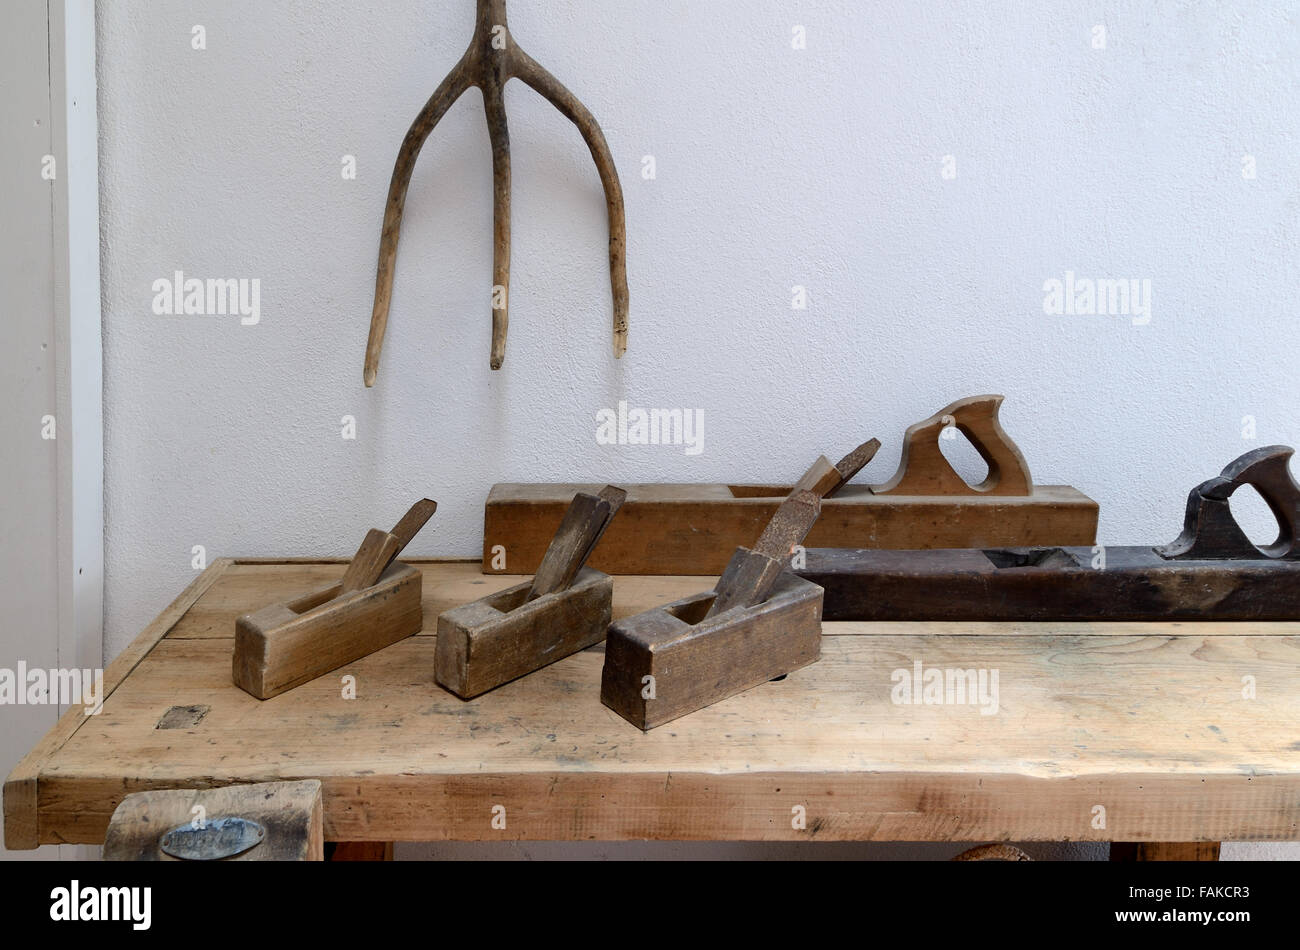 Vintage oder alte Flugzeuge aus Holz oder Holz Sägen & Bank verwendet für Zimmerei oder Holzarbeiten Stockfoto